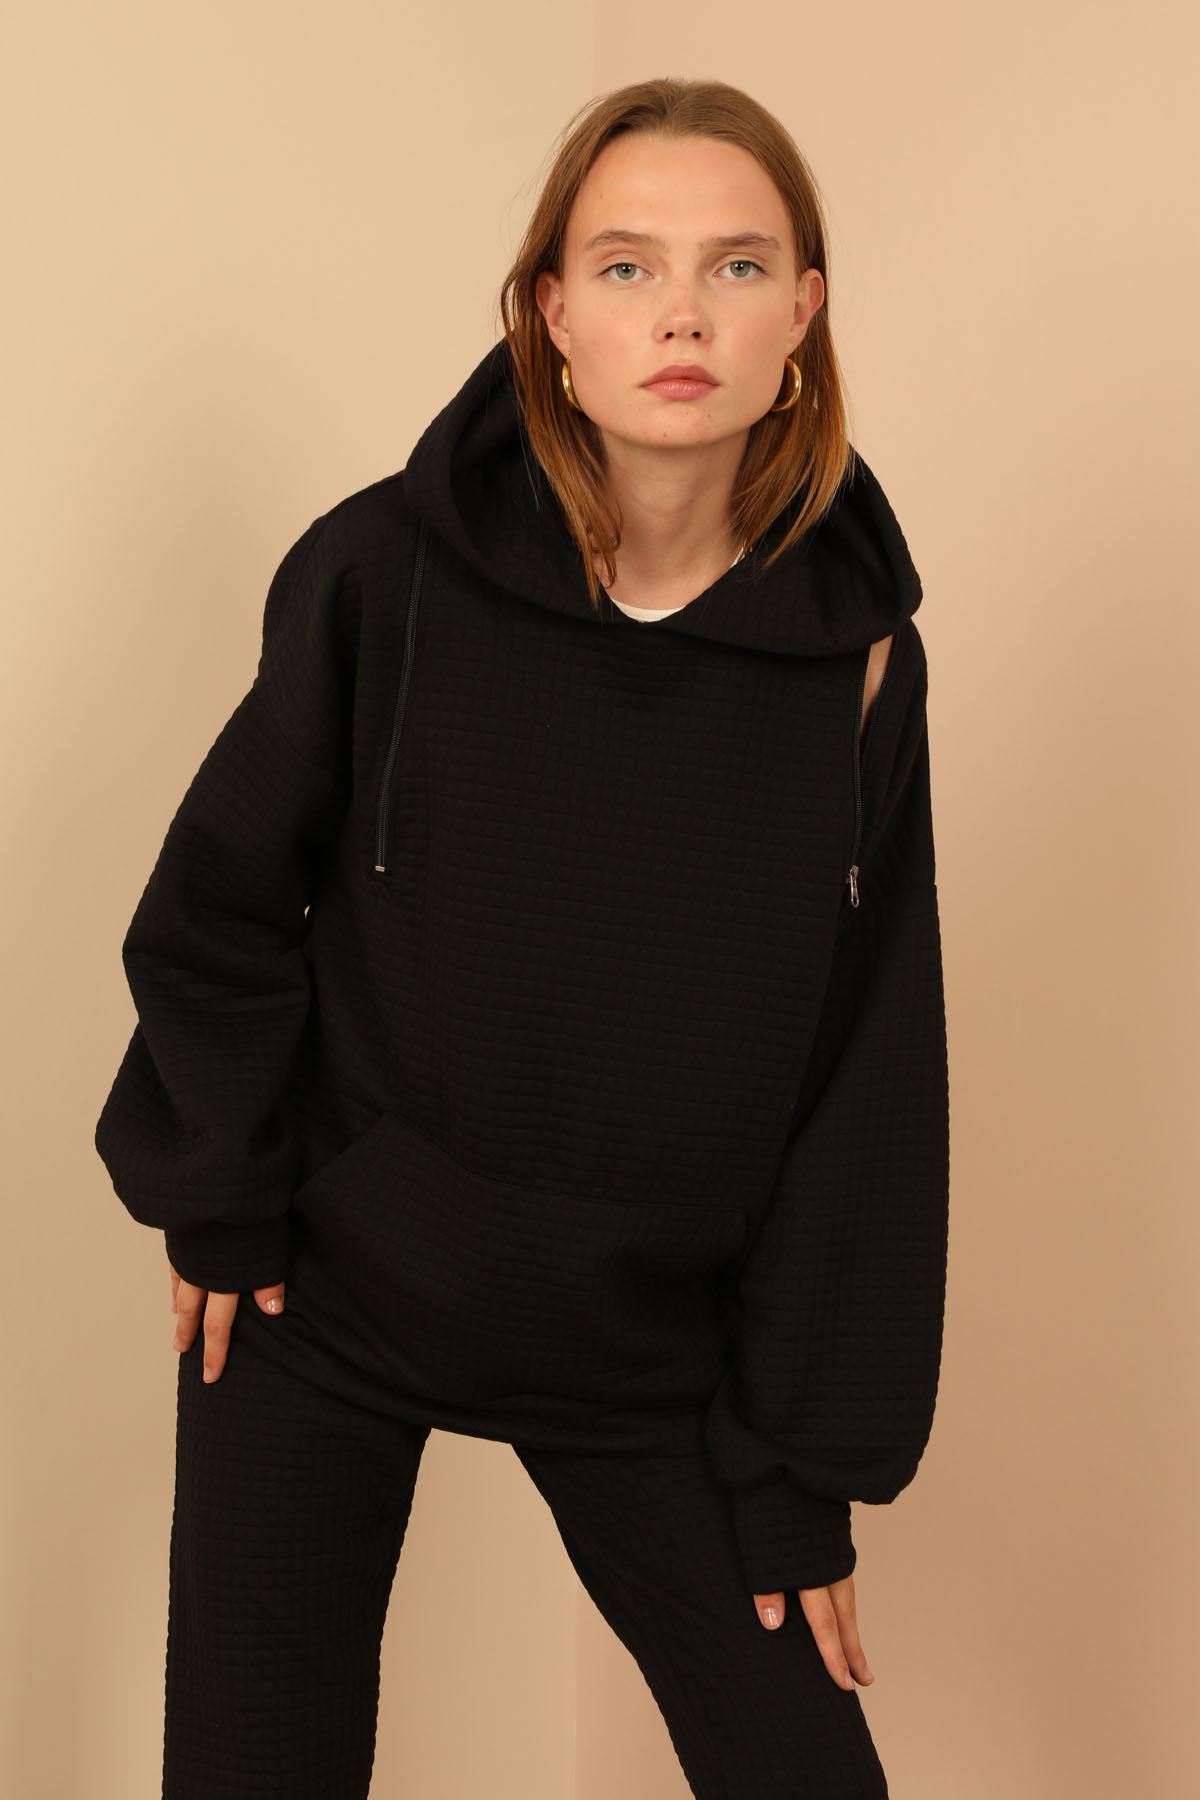 A wholesale clothing model wears Sweatshirt - Black, Turkish wholesale Hoodie of Kaktus Moda